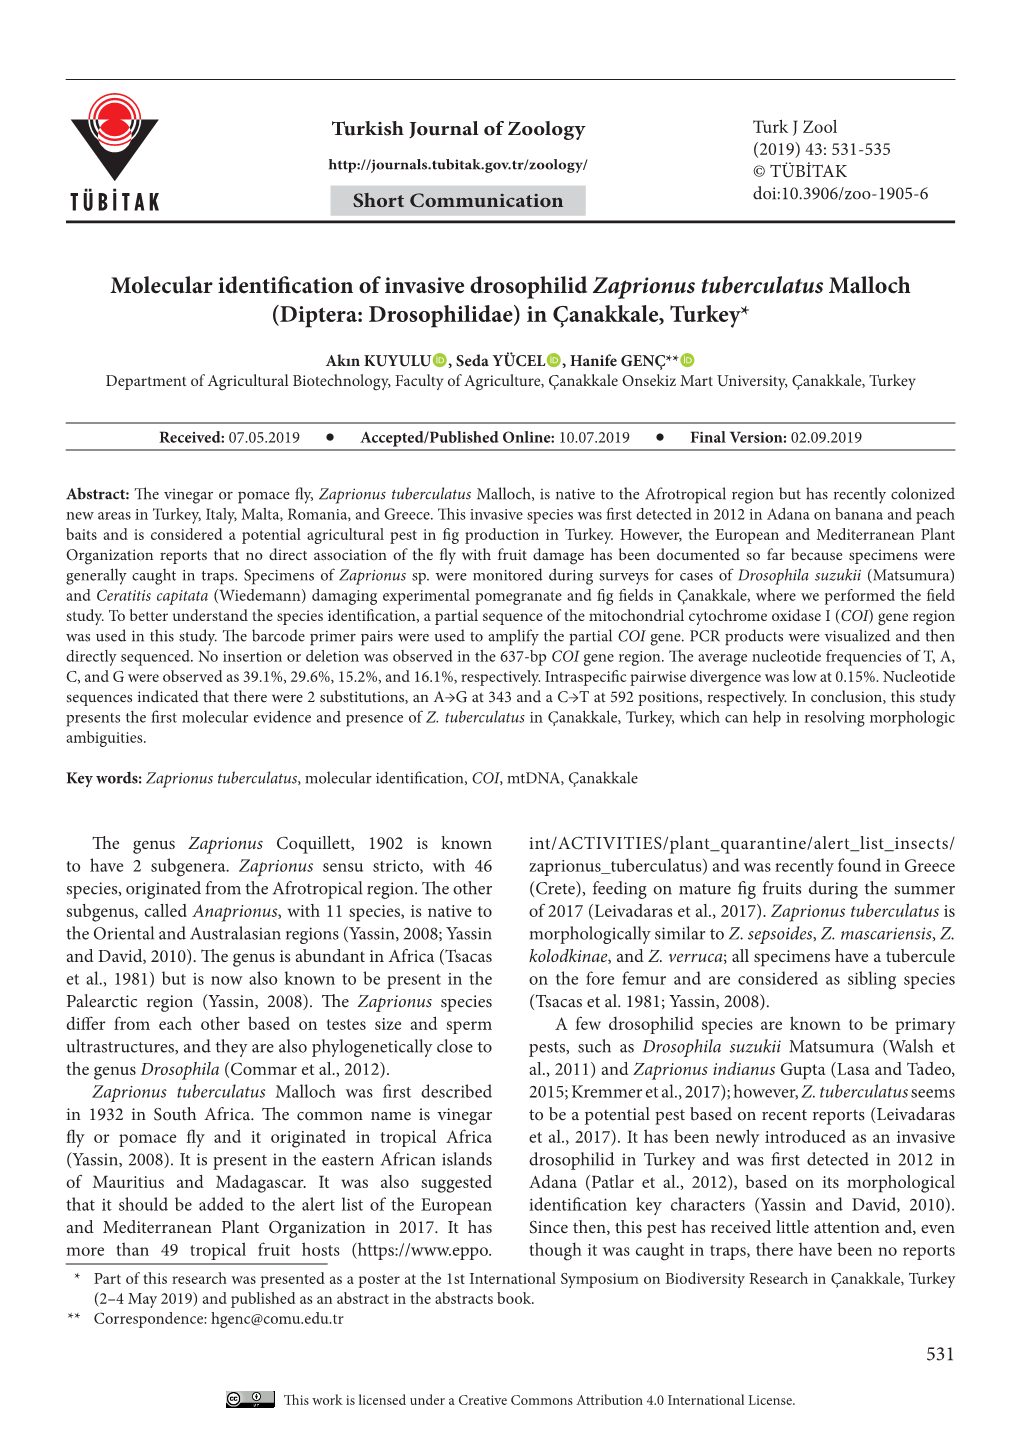 Molecular Identification of Invasive Drosophilid Zaprionus Tuberculatus